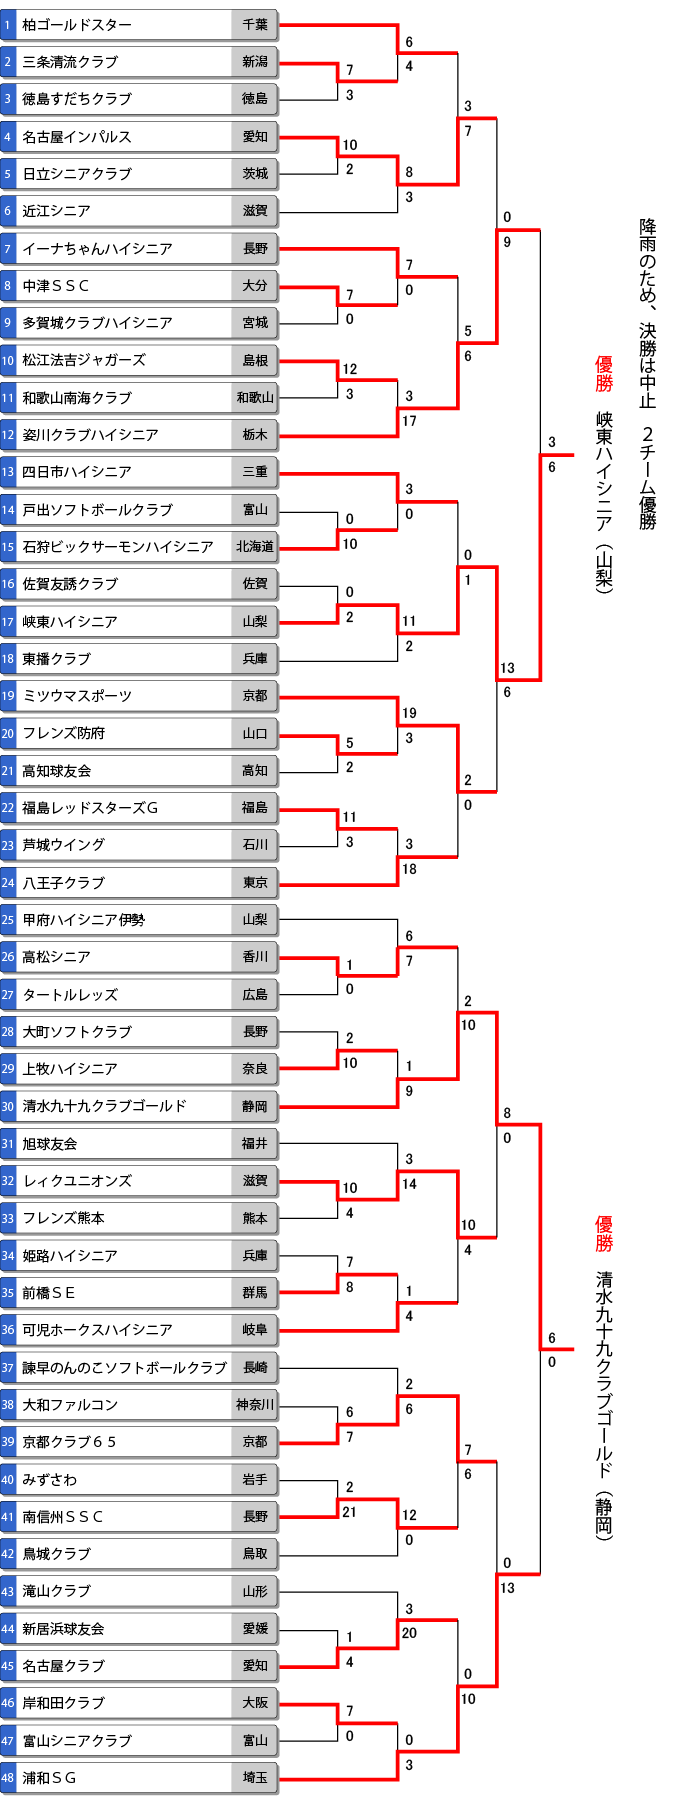 第14回全日本ハイシニア大会トーナメント表